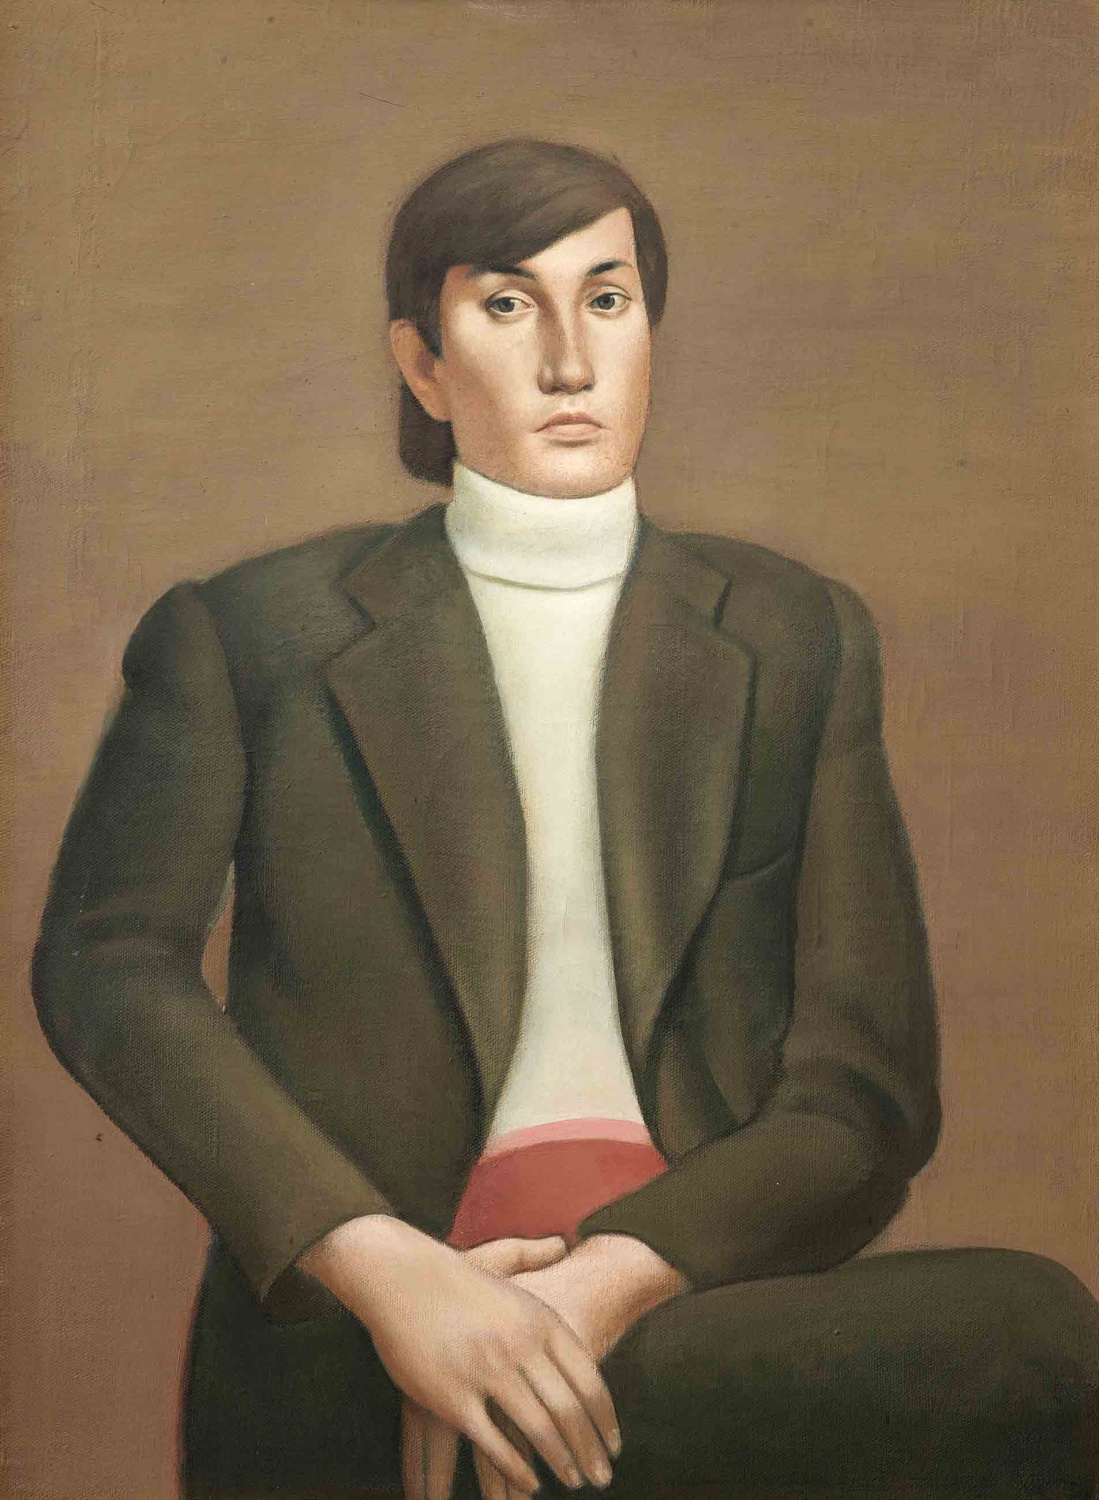 "Portrait of a Man", 1970s